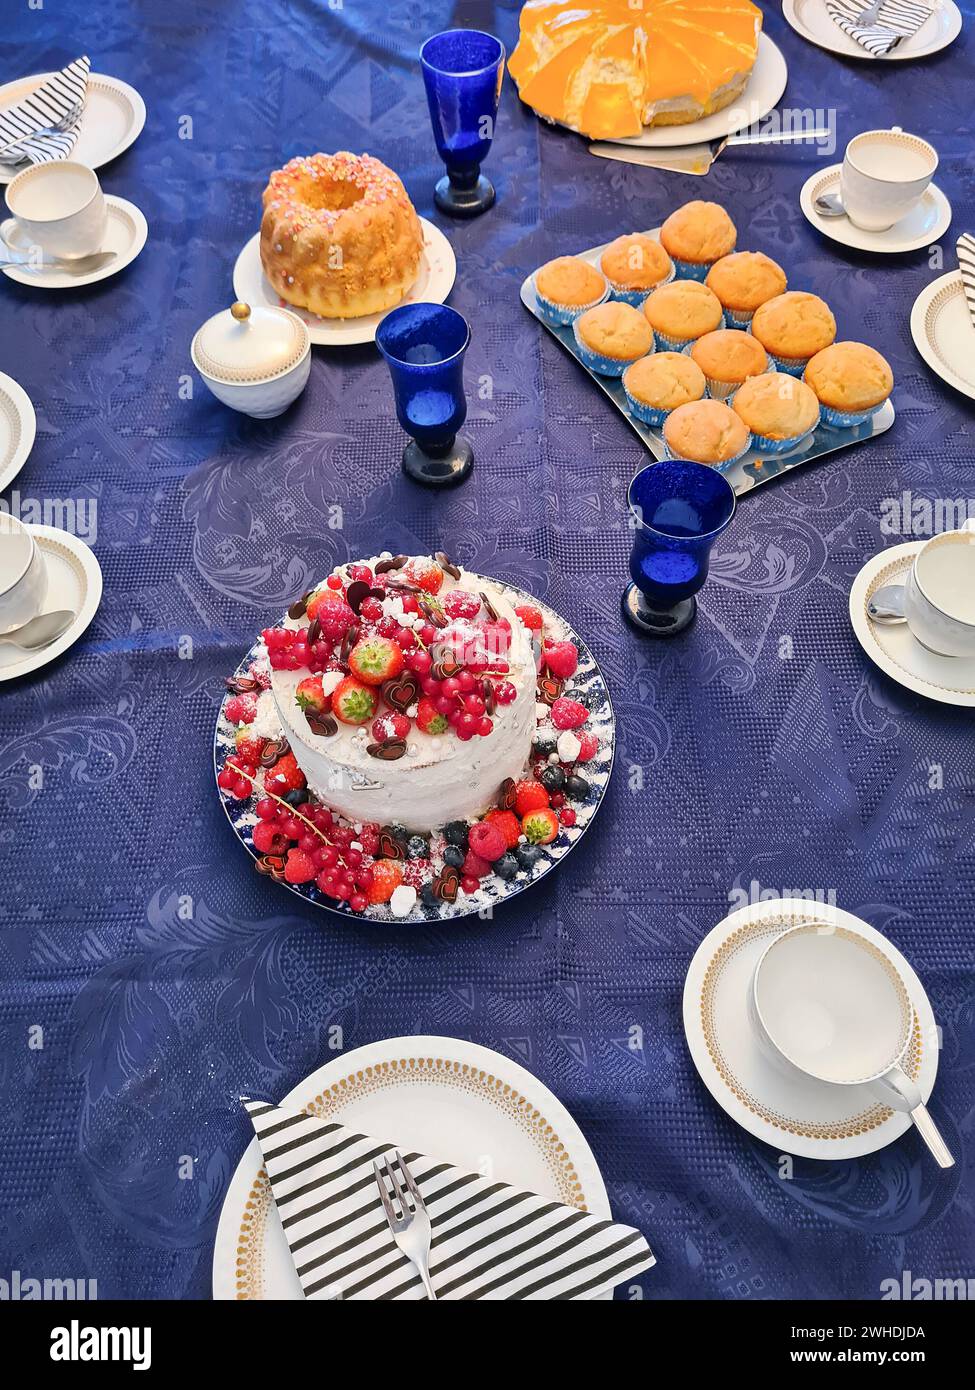 Una mesa de cumpleaños decorada festivamente con varios pasteles y pasteles en un mantel azul Foto de stock